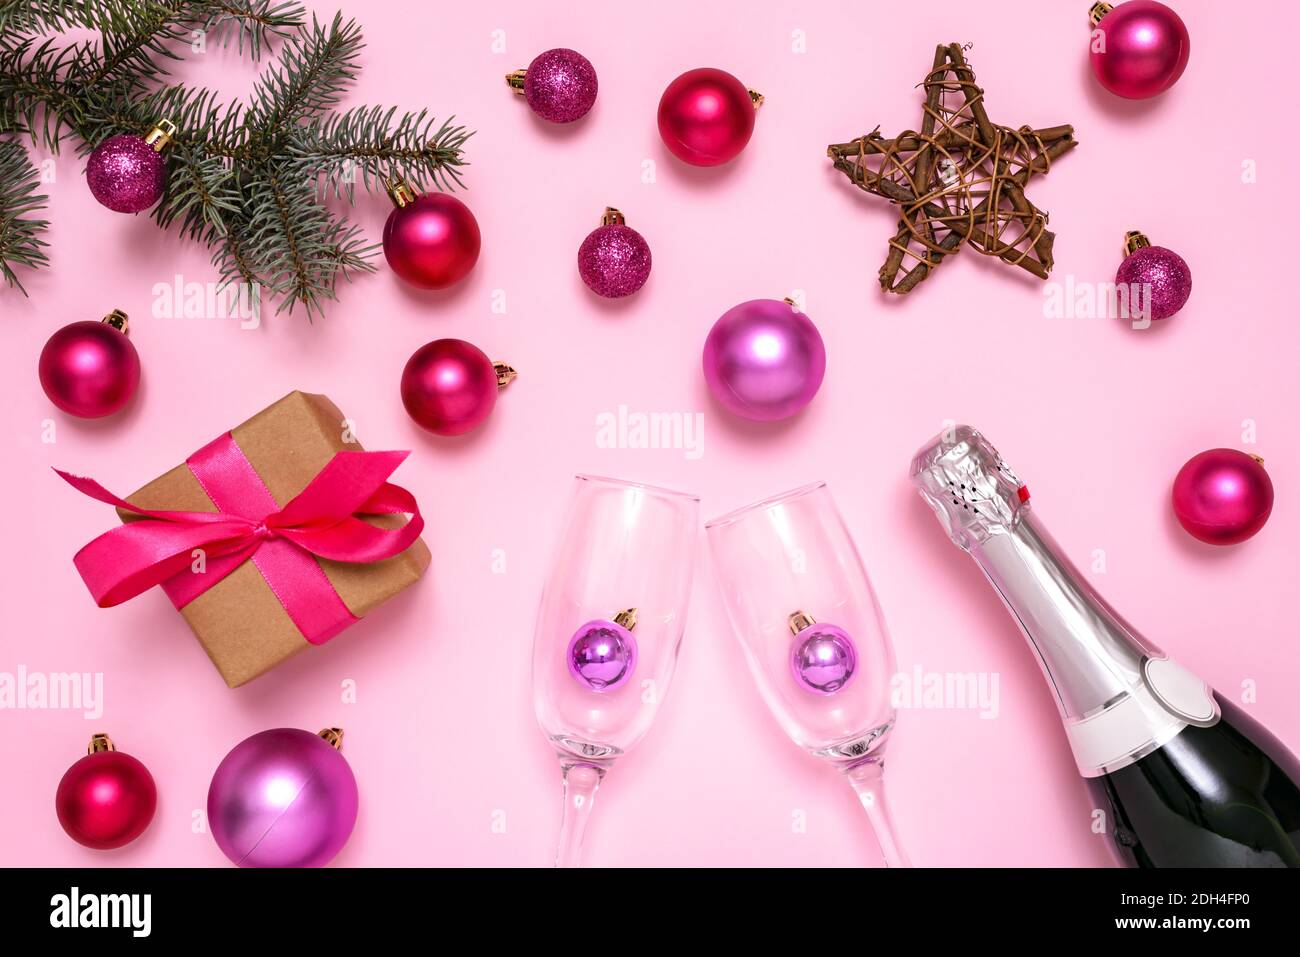 Weihnachtsschmuck, Champagner, Tannenbaum und Geschenkbox auf pastellrosa Hintergrund. Das Konzept der Feier des neuen Jahres und Weihnachten. Draufsicht. Stockfoto